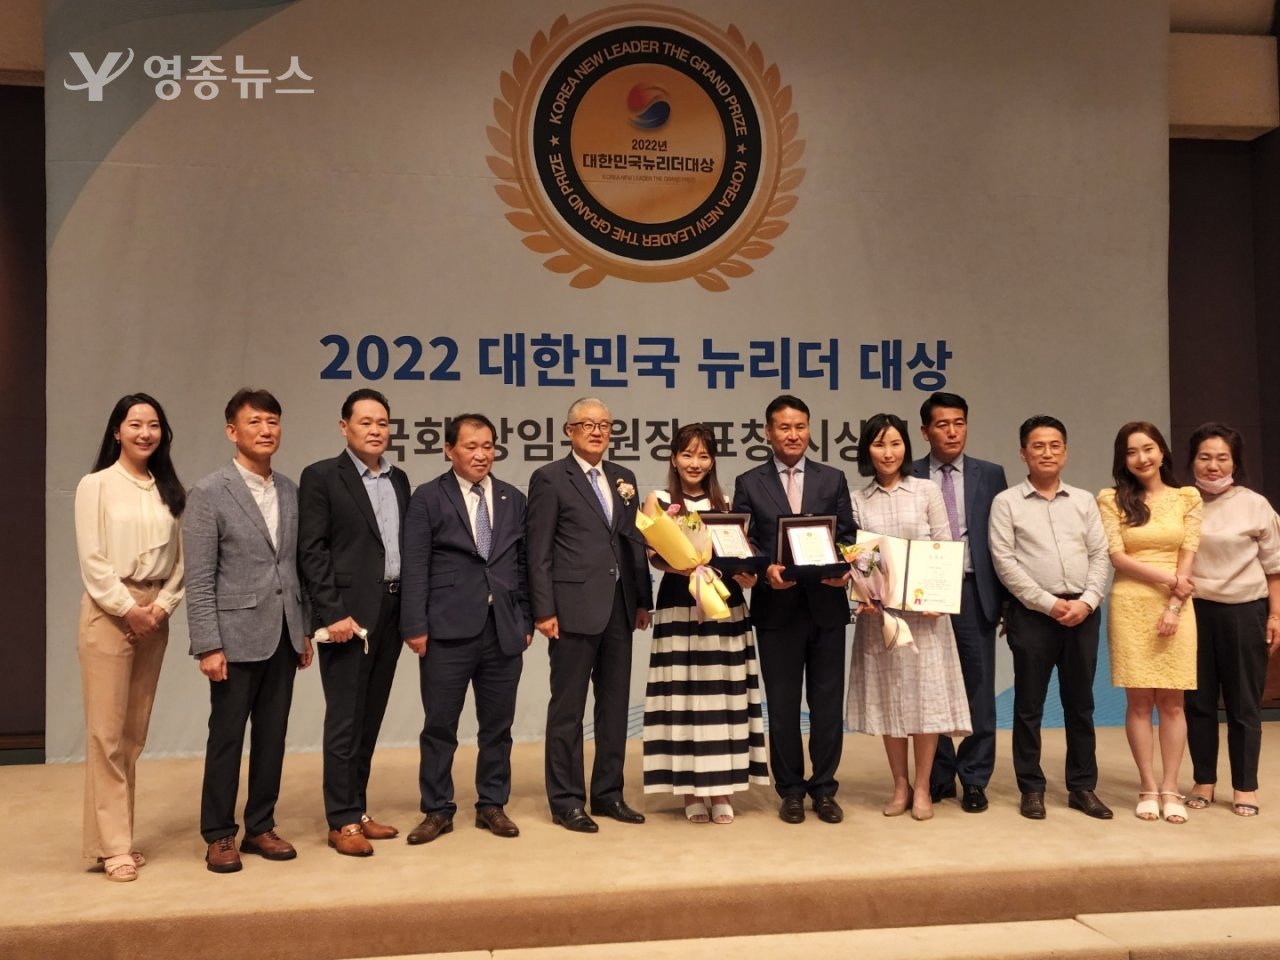 한국신문방송인협회가 주최한 제4회 2022 대한민국 뉴리더대상 성황리 개최